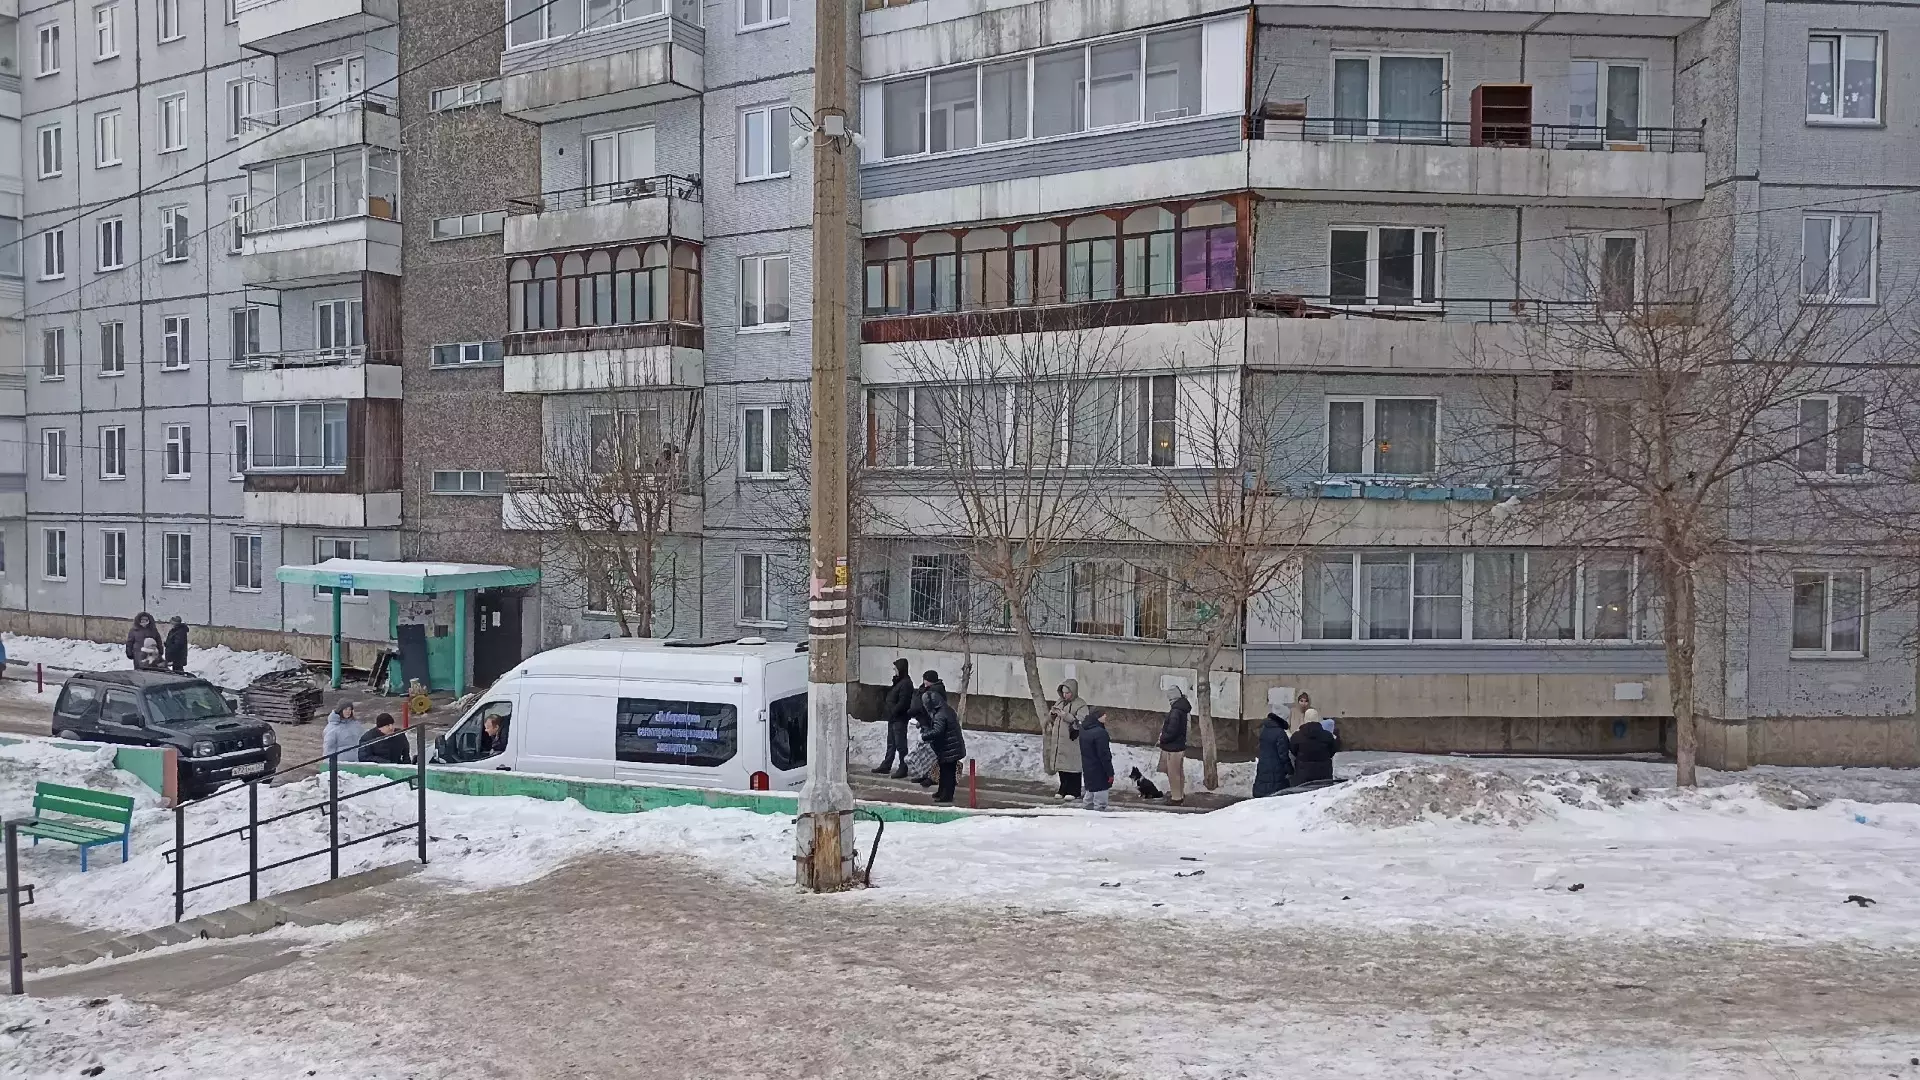 Губернатор края ввел карантин из-за бешенства в отдельной квартире в Красноярске